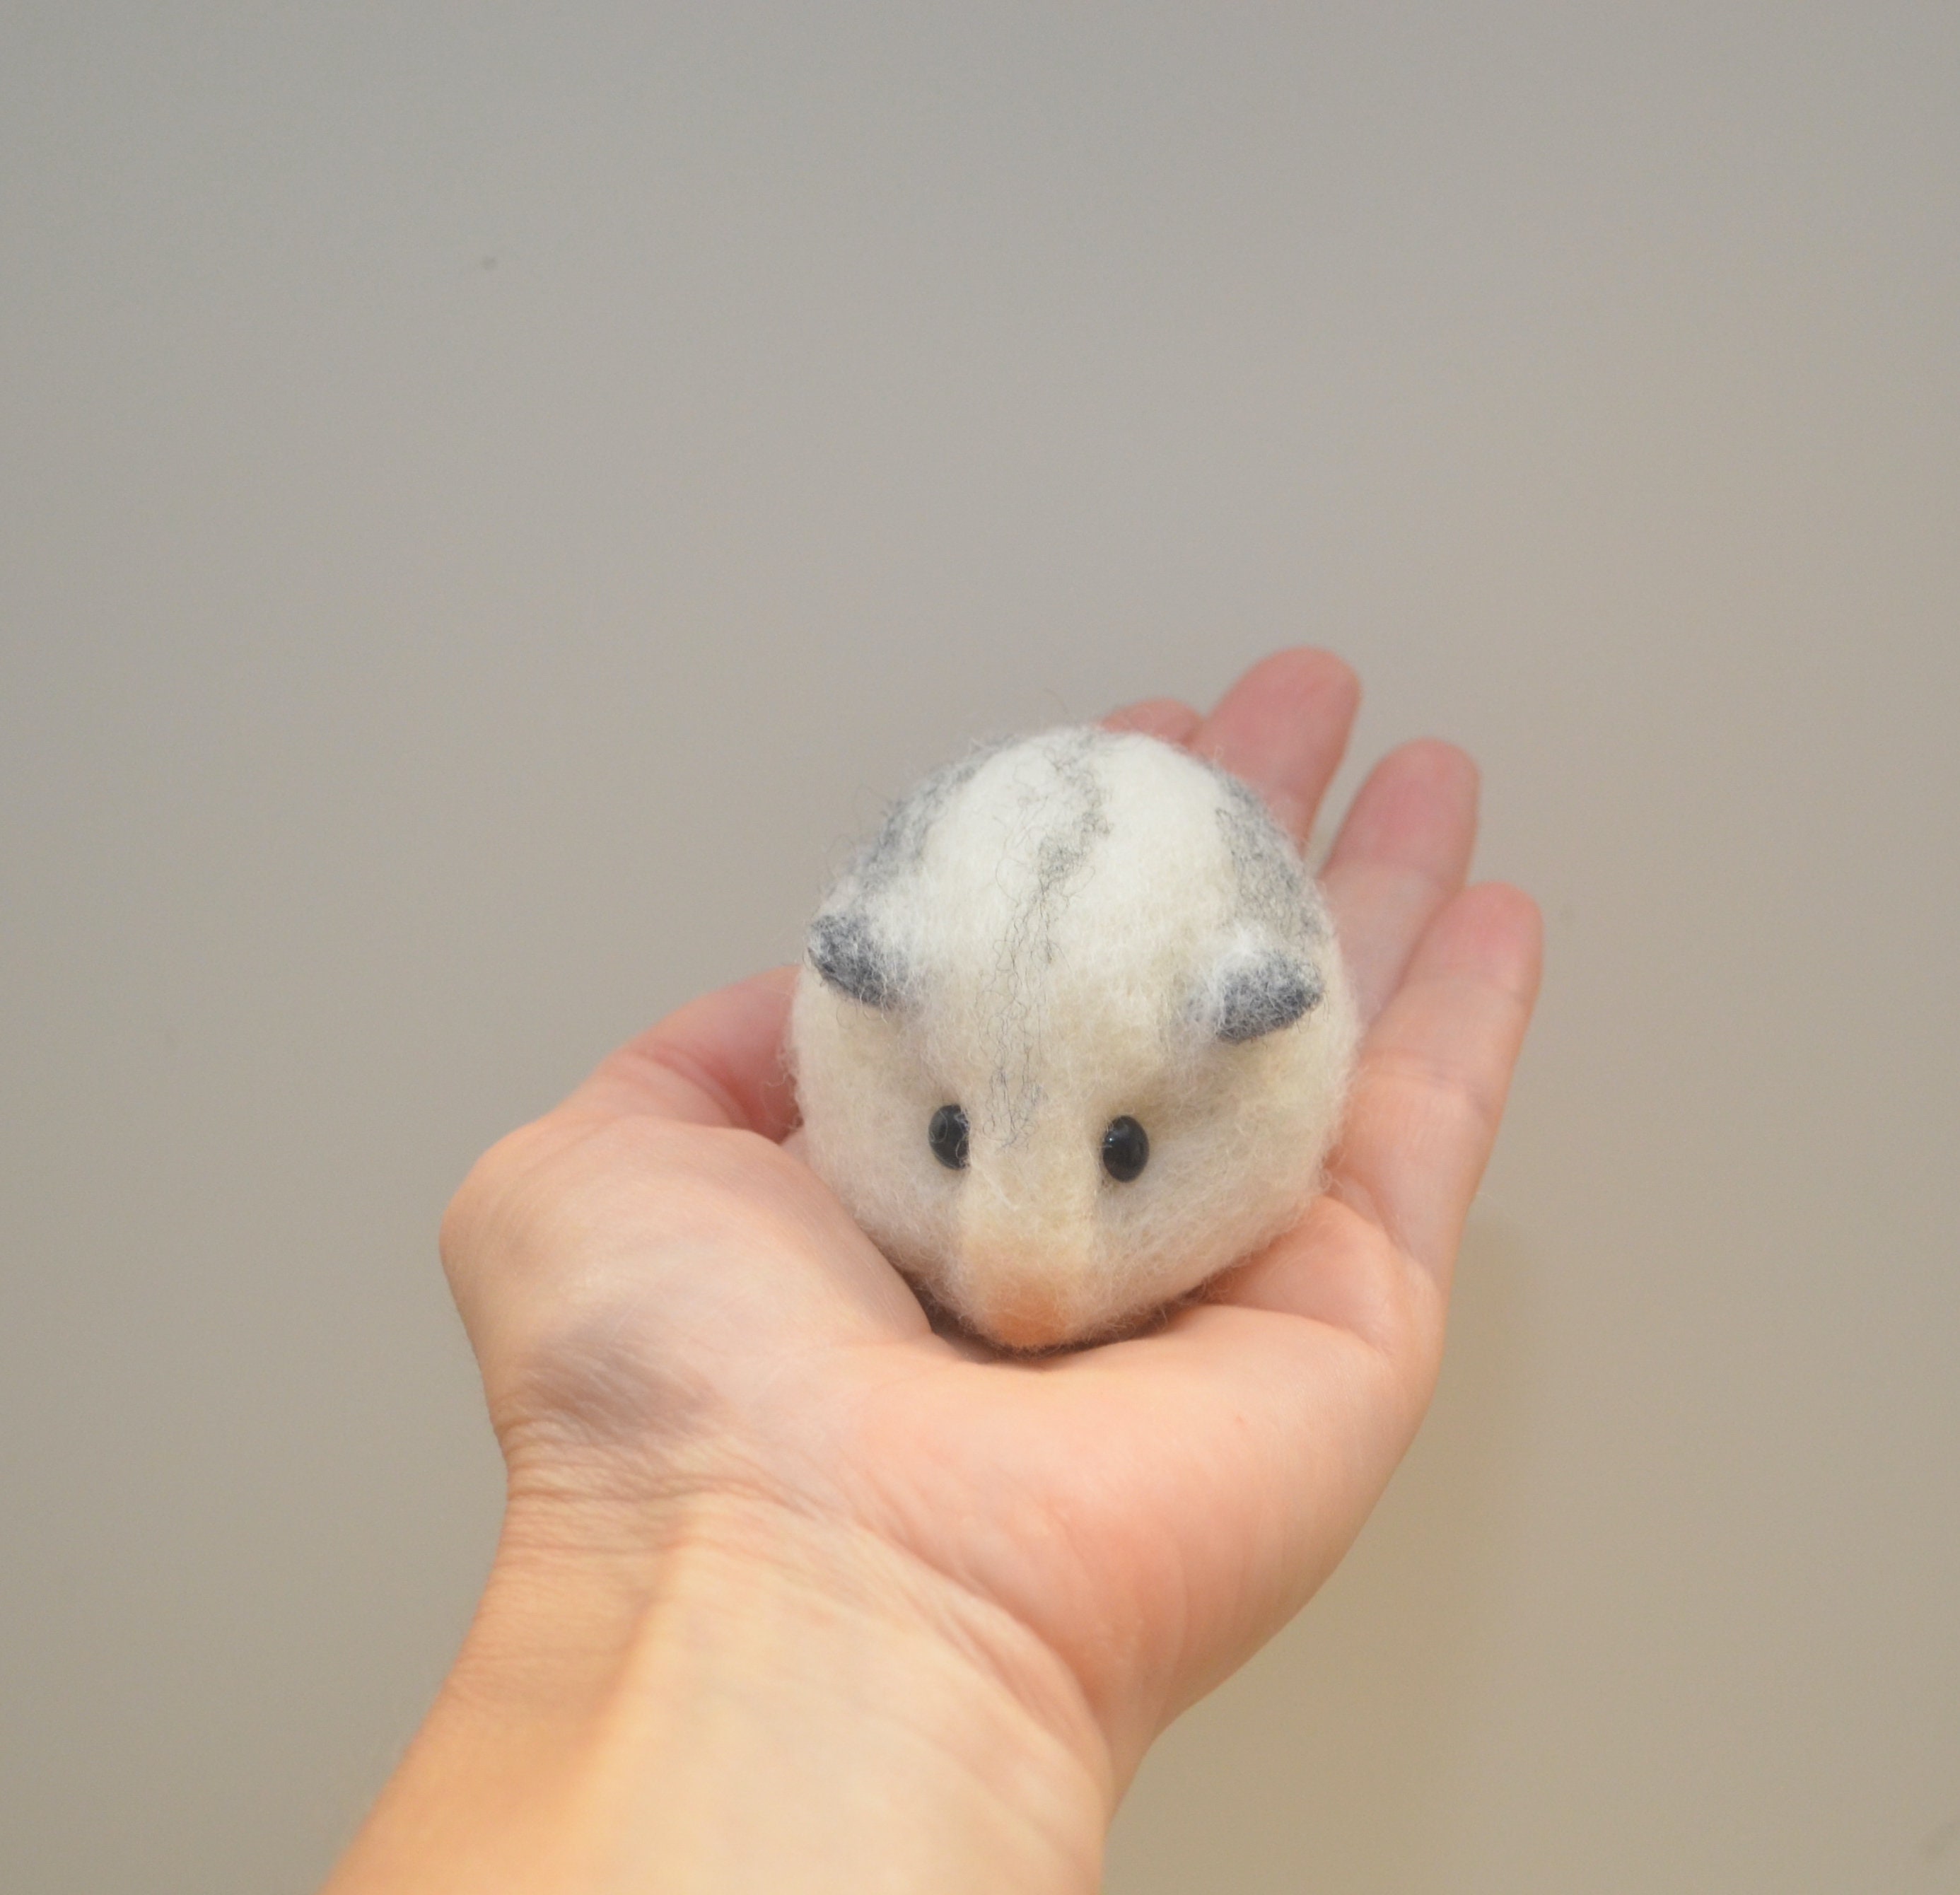 Aiguille feutre blanc hamster nain hybride minuscule réaliste miniature  pépinière décoration ornement adultes jouet cadeau enfant lui sa nièce  enfants ami -  France